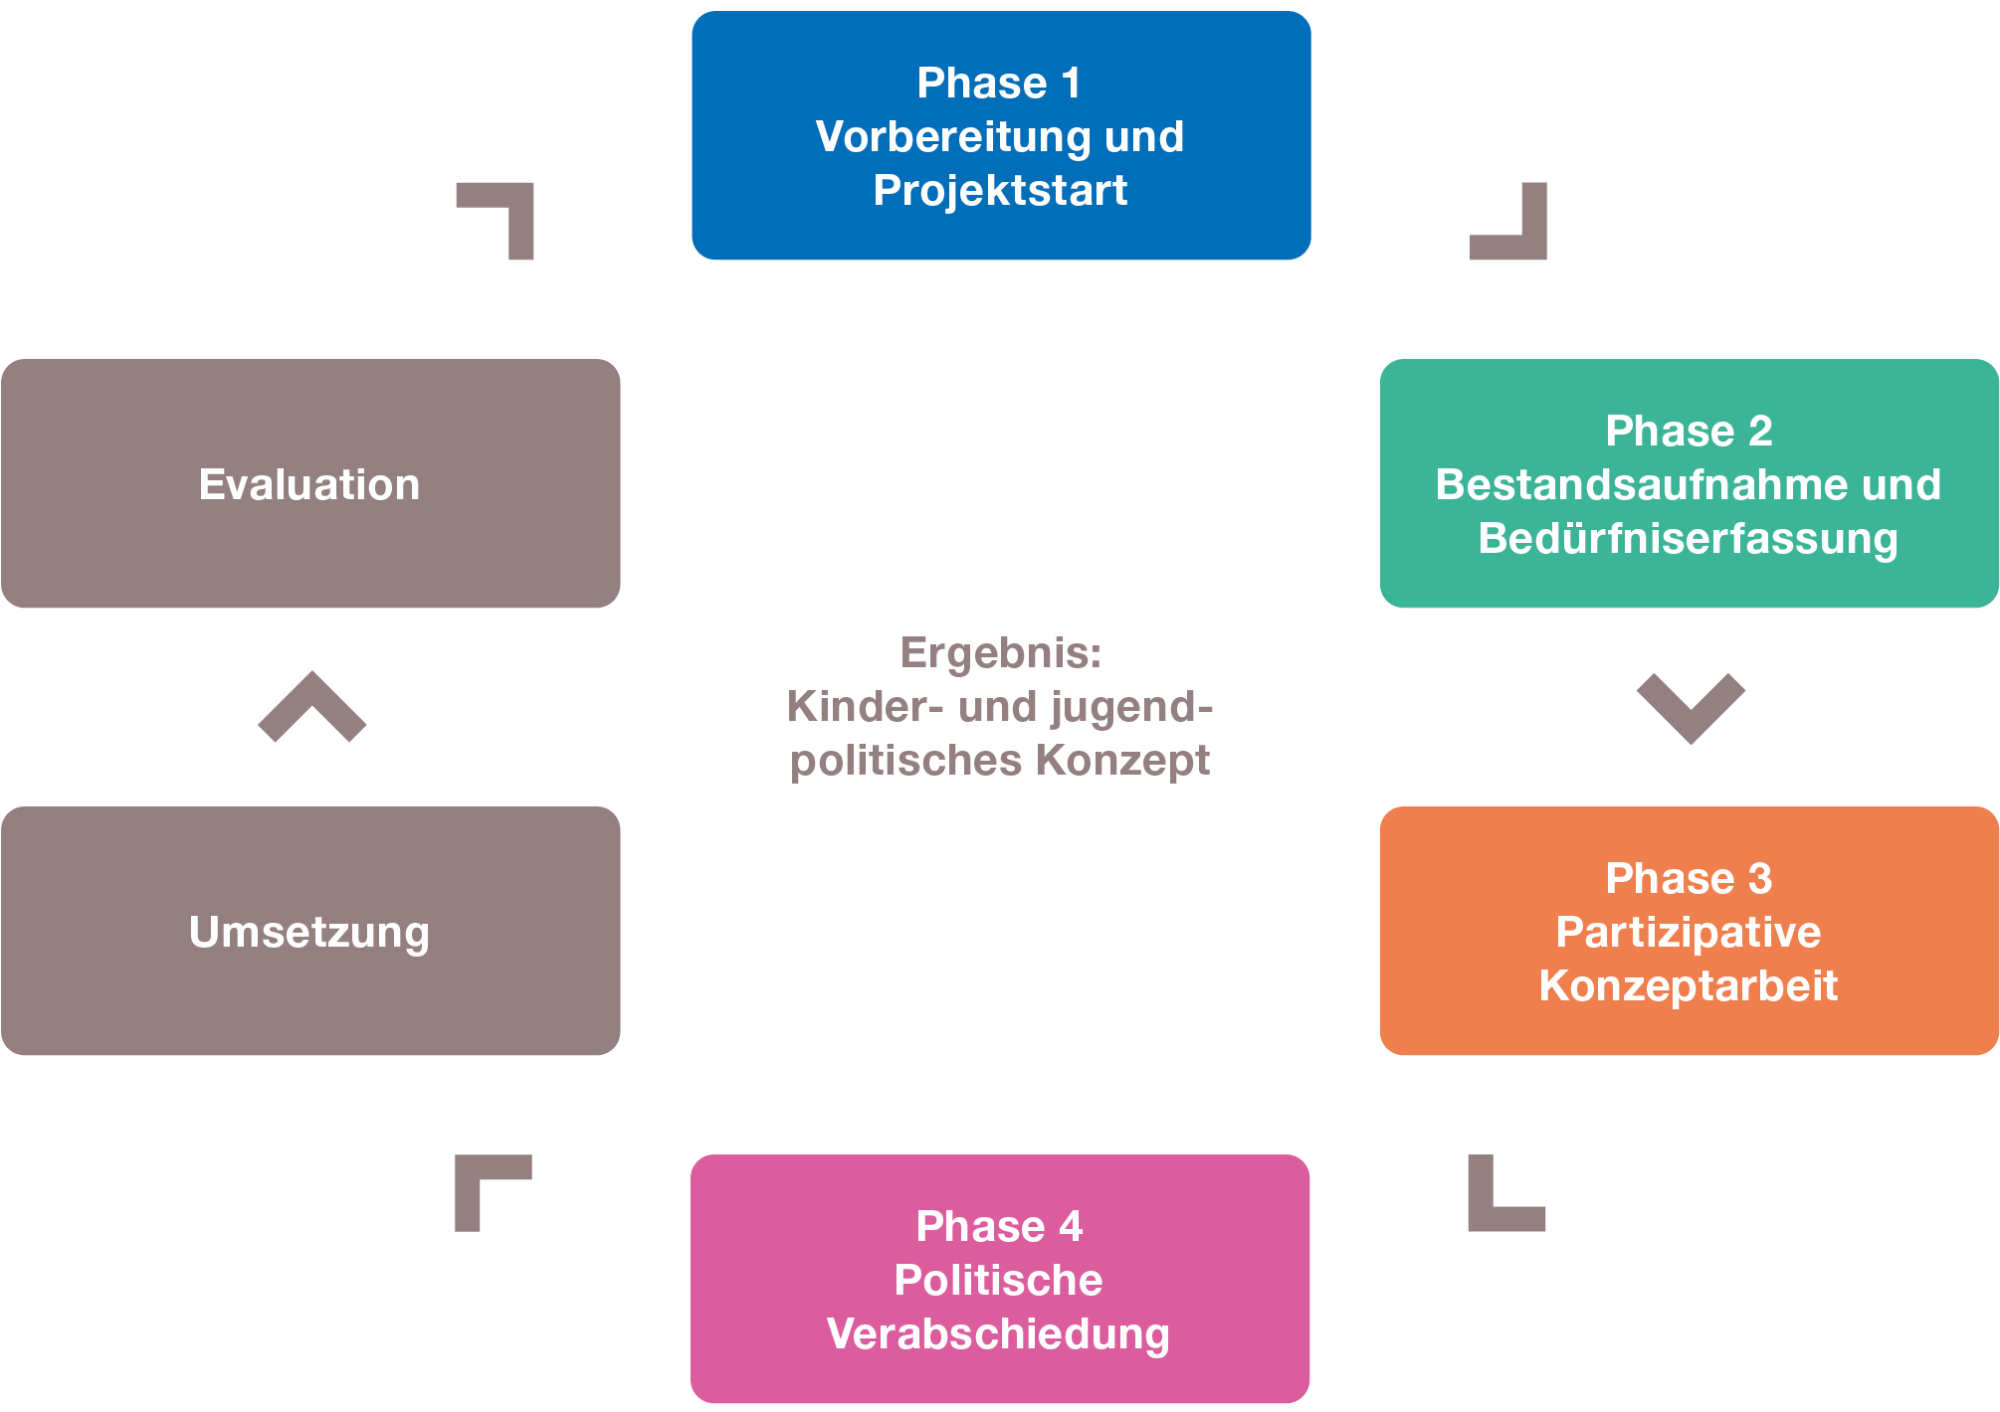 Abbildung 1: Phasen der Entwicklung eines kinder- und jugendpolitischen Konzepts (eigene Darstellung in Anlehnung an das Planungsverständnis von Schnurr et al. 2010)